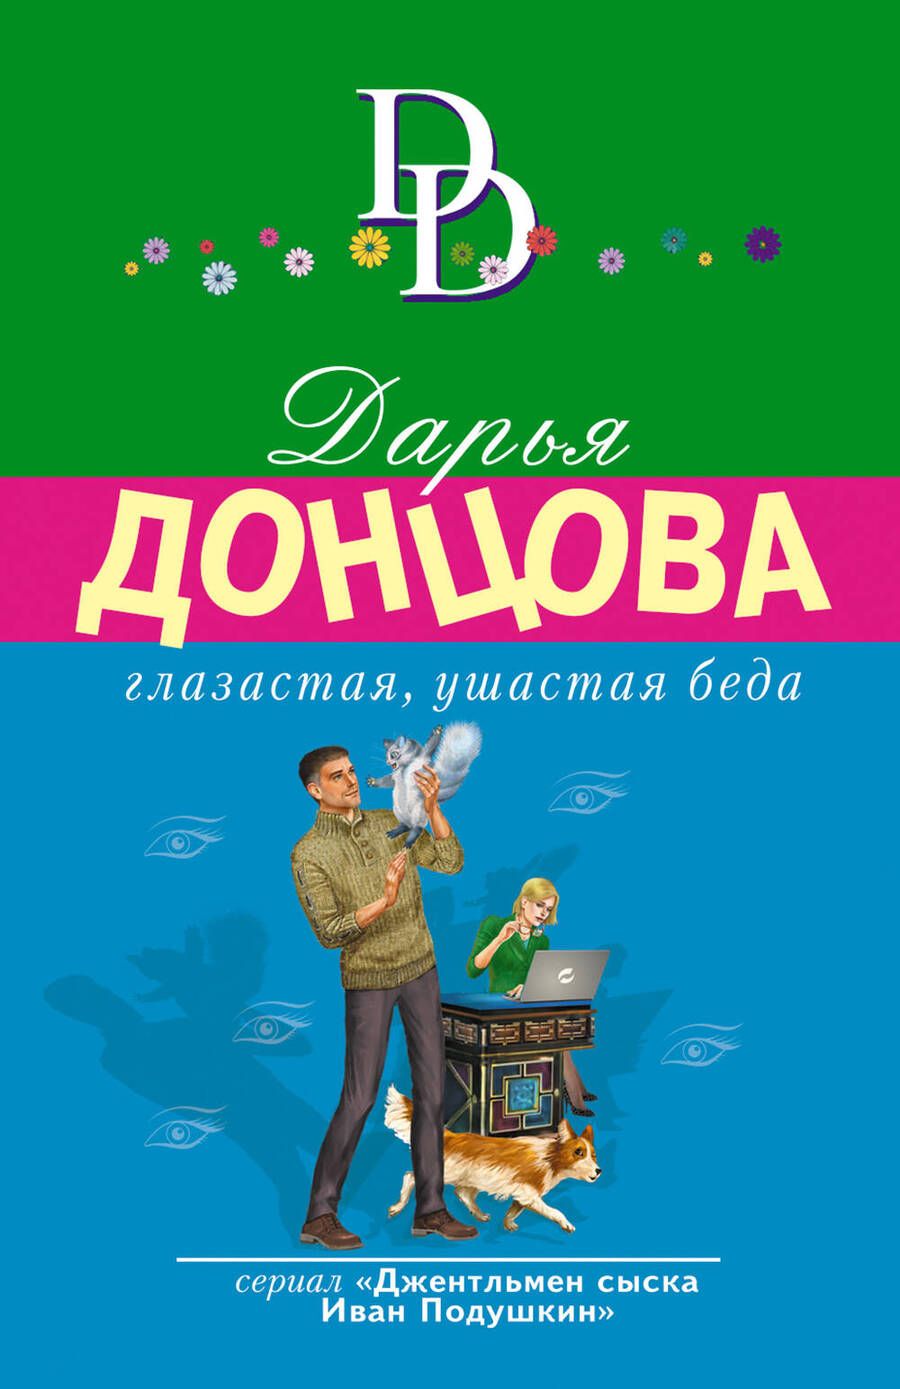 Обложка книги "Донцова: Глазастая, ушастая беда"